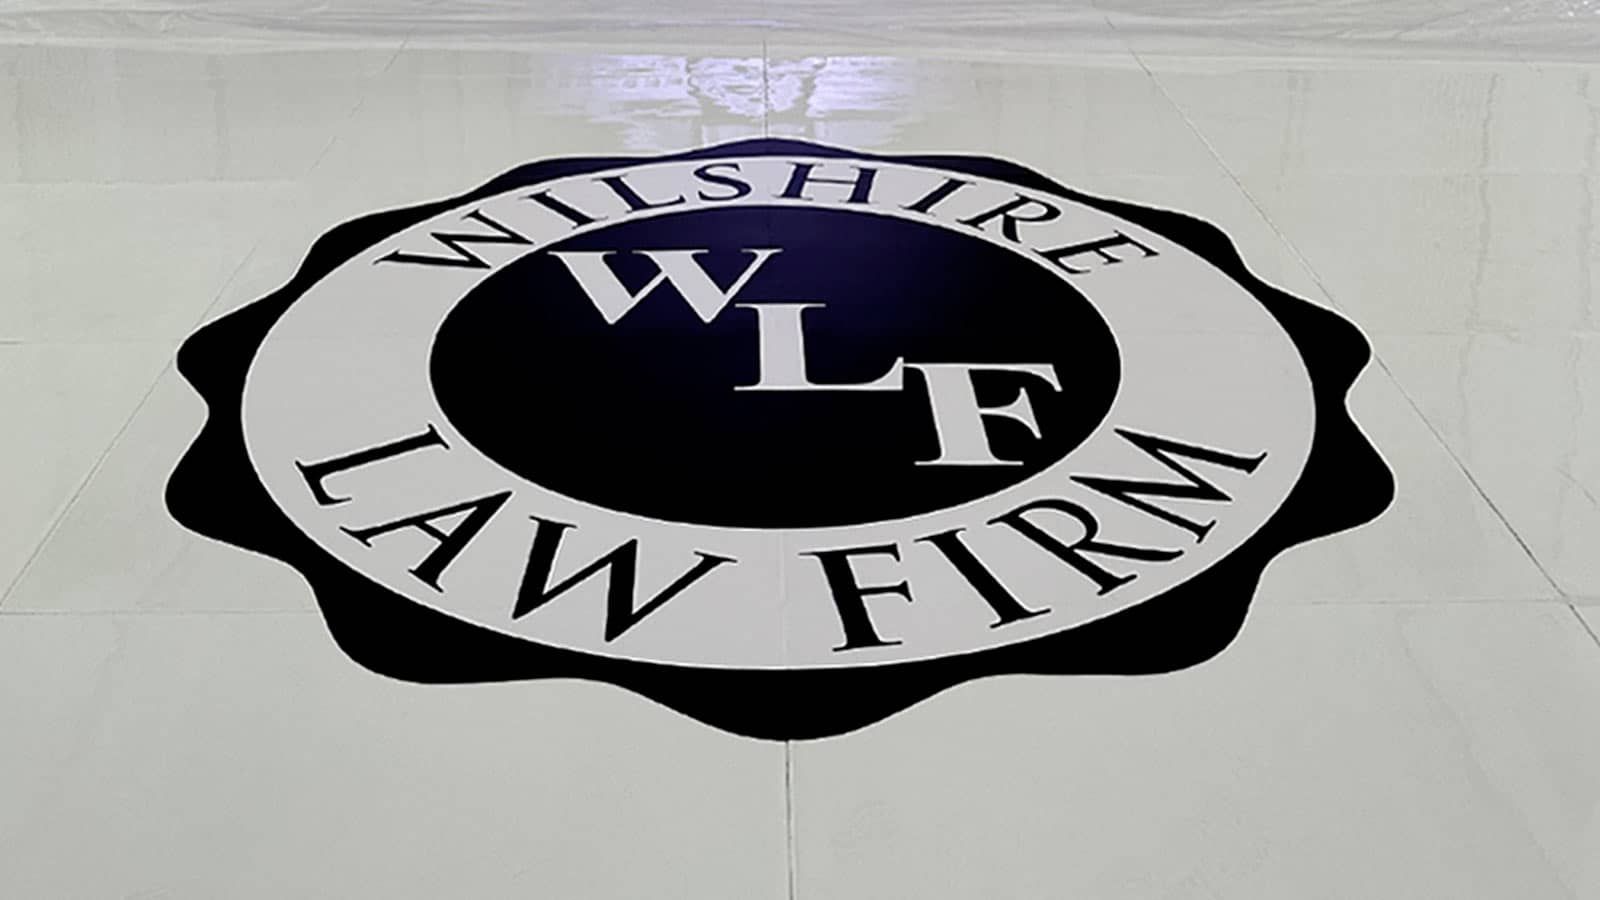 Wilshire Law Firm floor decal for branding